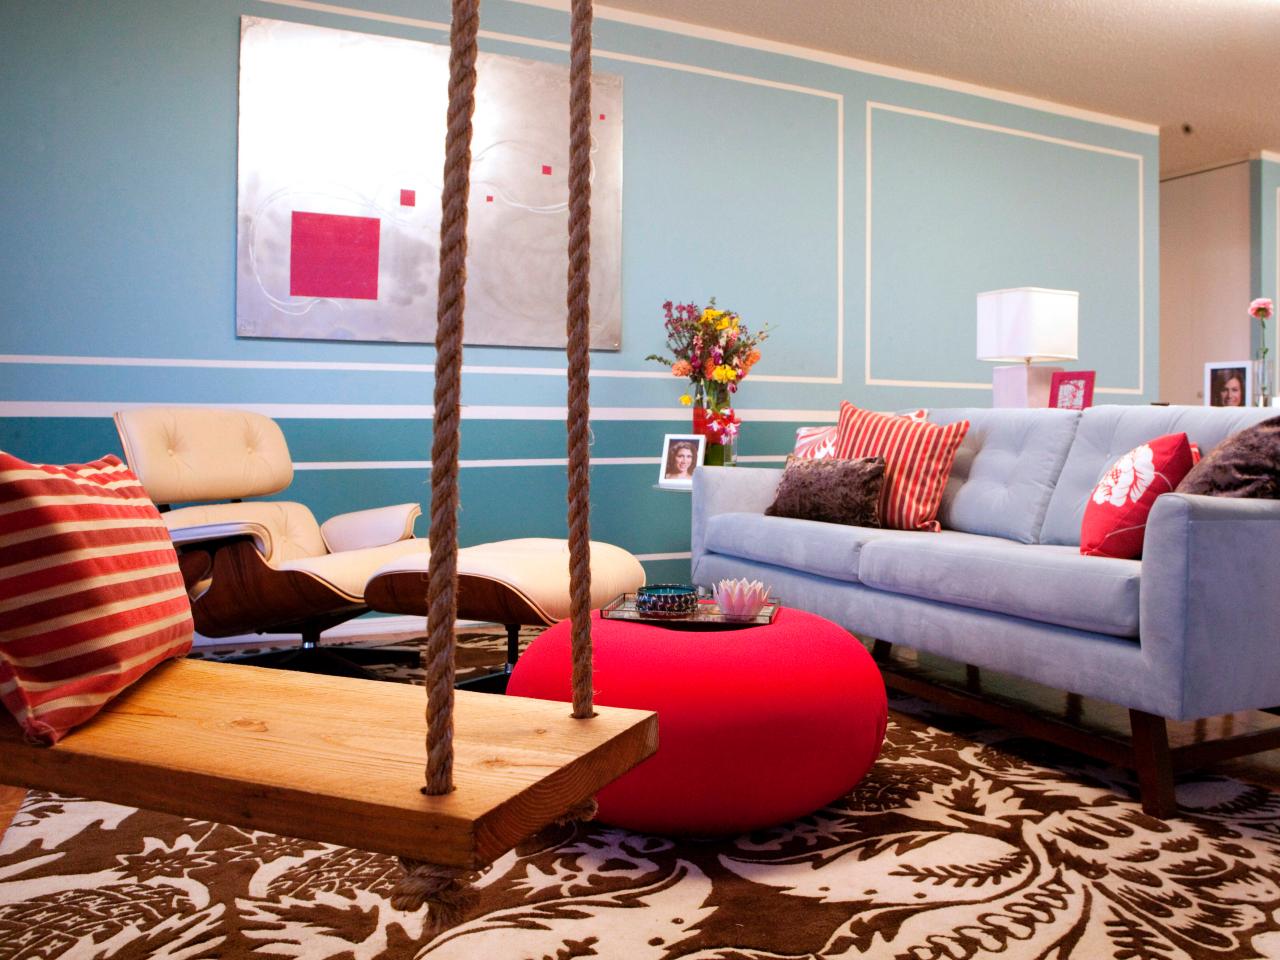 客厅,背景墙,其它,混搭,欧式,红色,蓝色